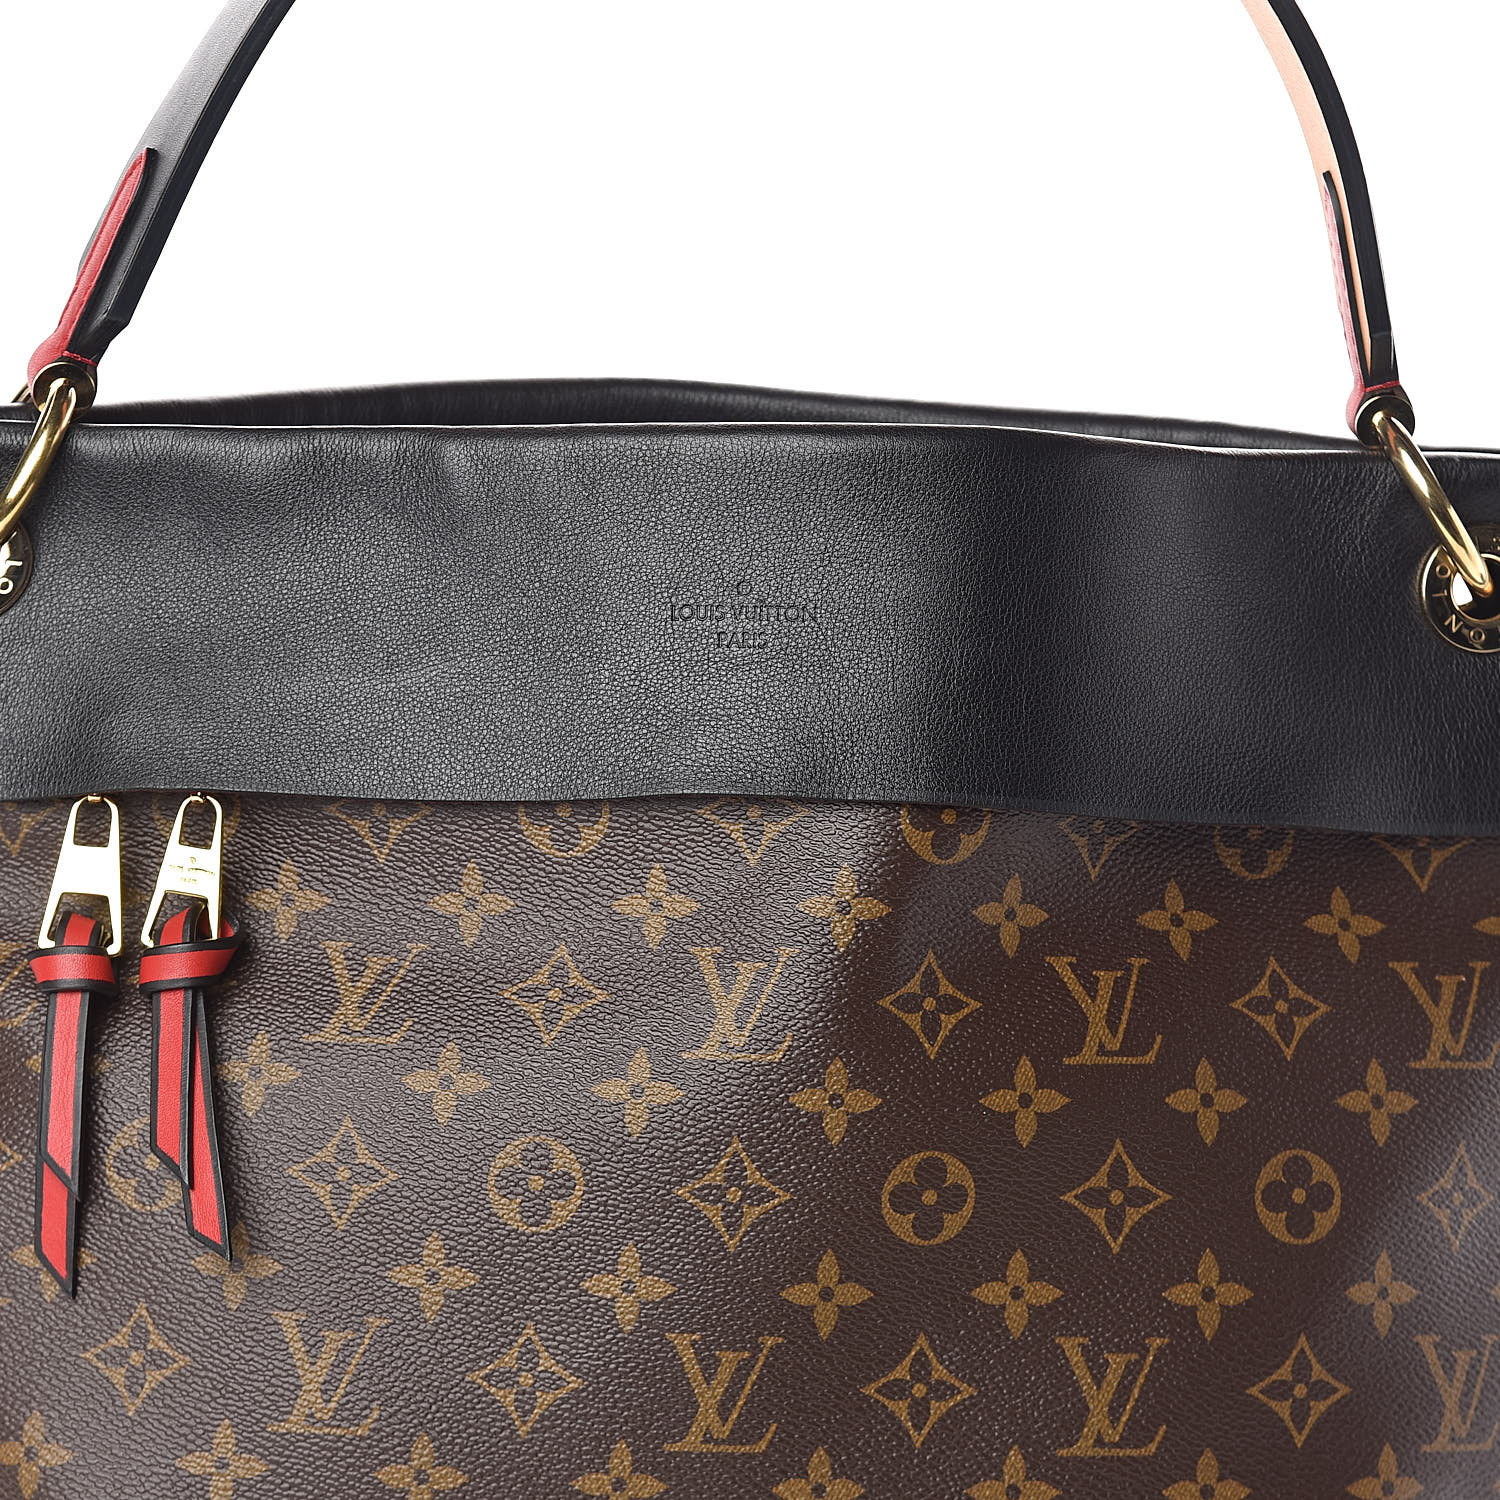 $3000 Louis Vuitton Black Leather Mahina L Large Shoulder Bag